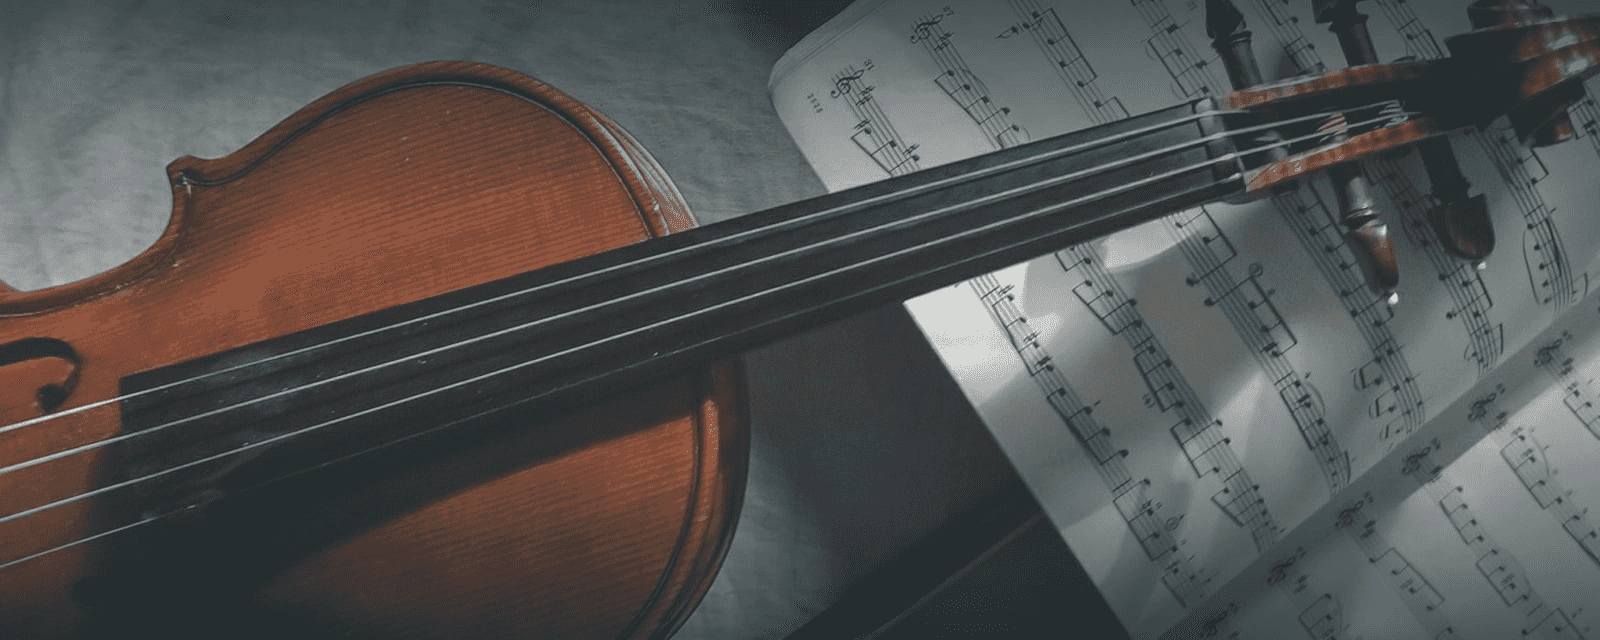 Violine, Viola und Kammermusik